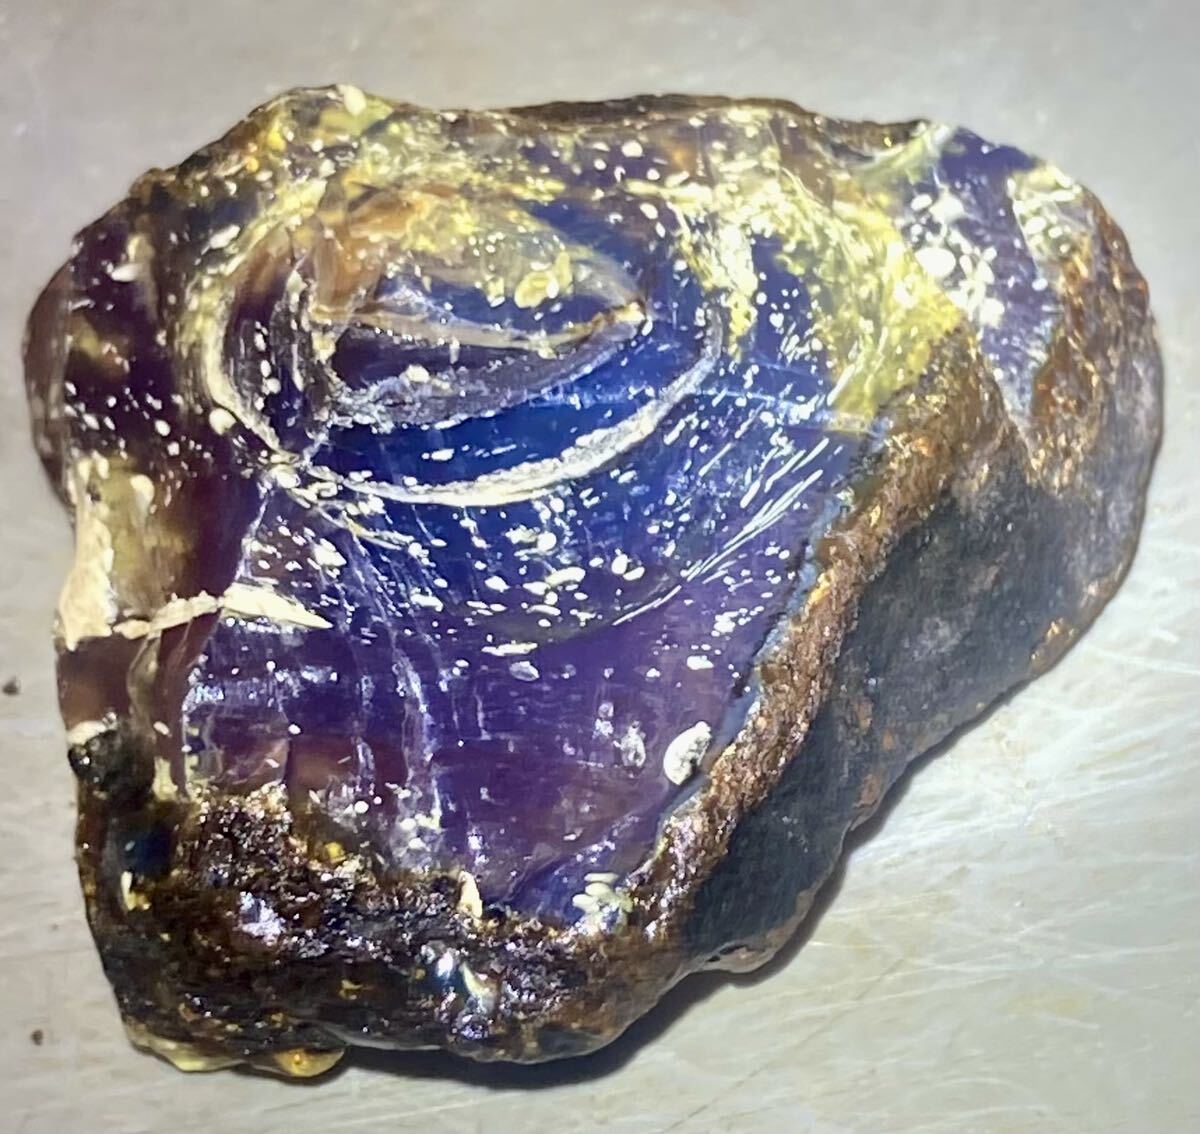 インドネシア スマトラ島産天然ブルーアンバー原石26.42g綺麗^ ^の画像3